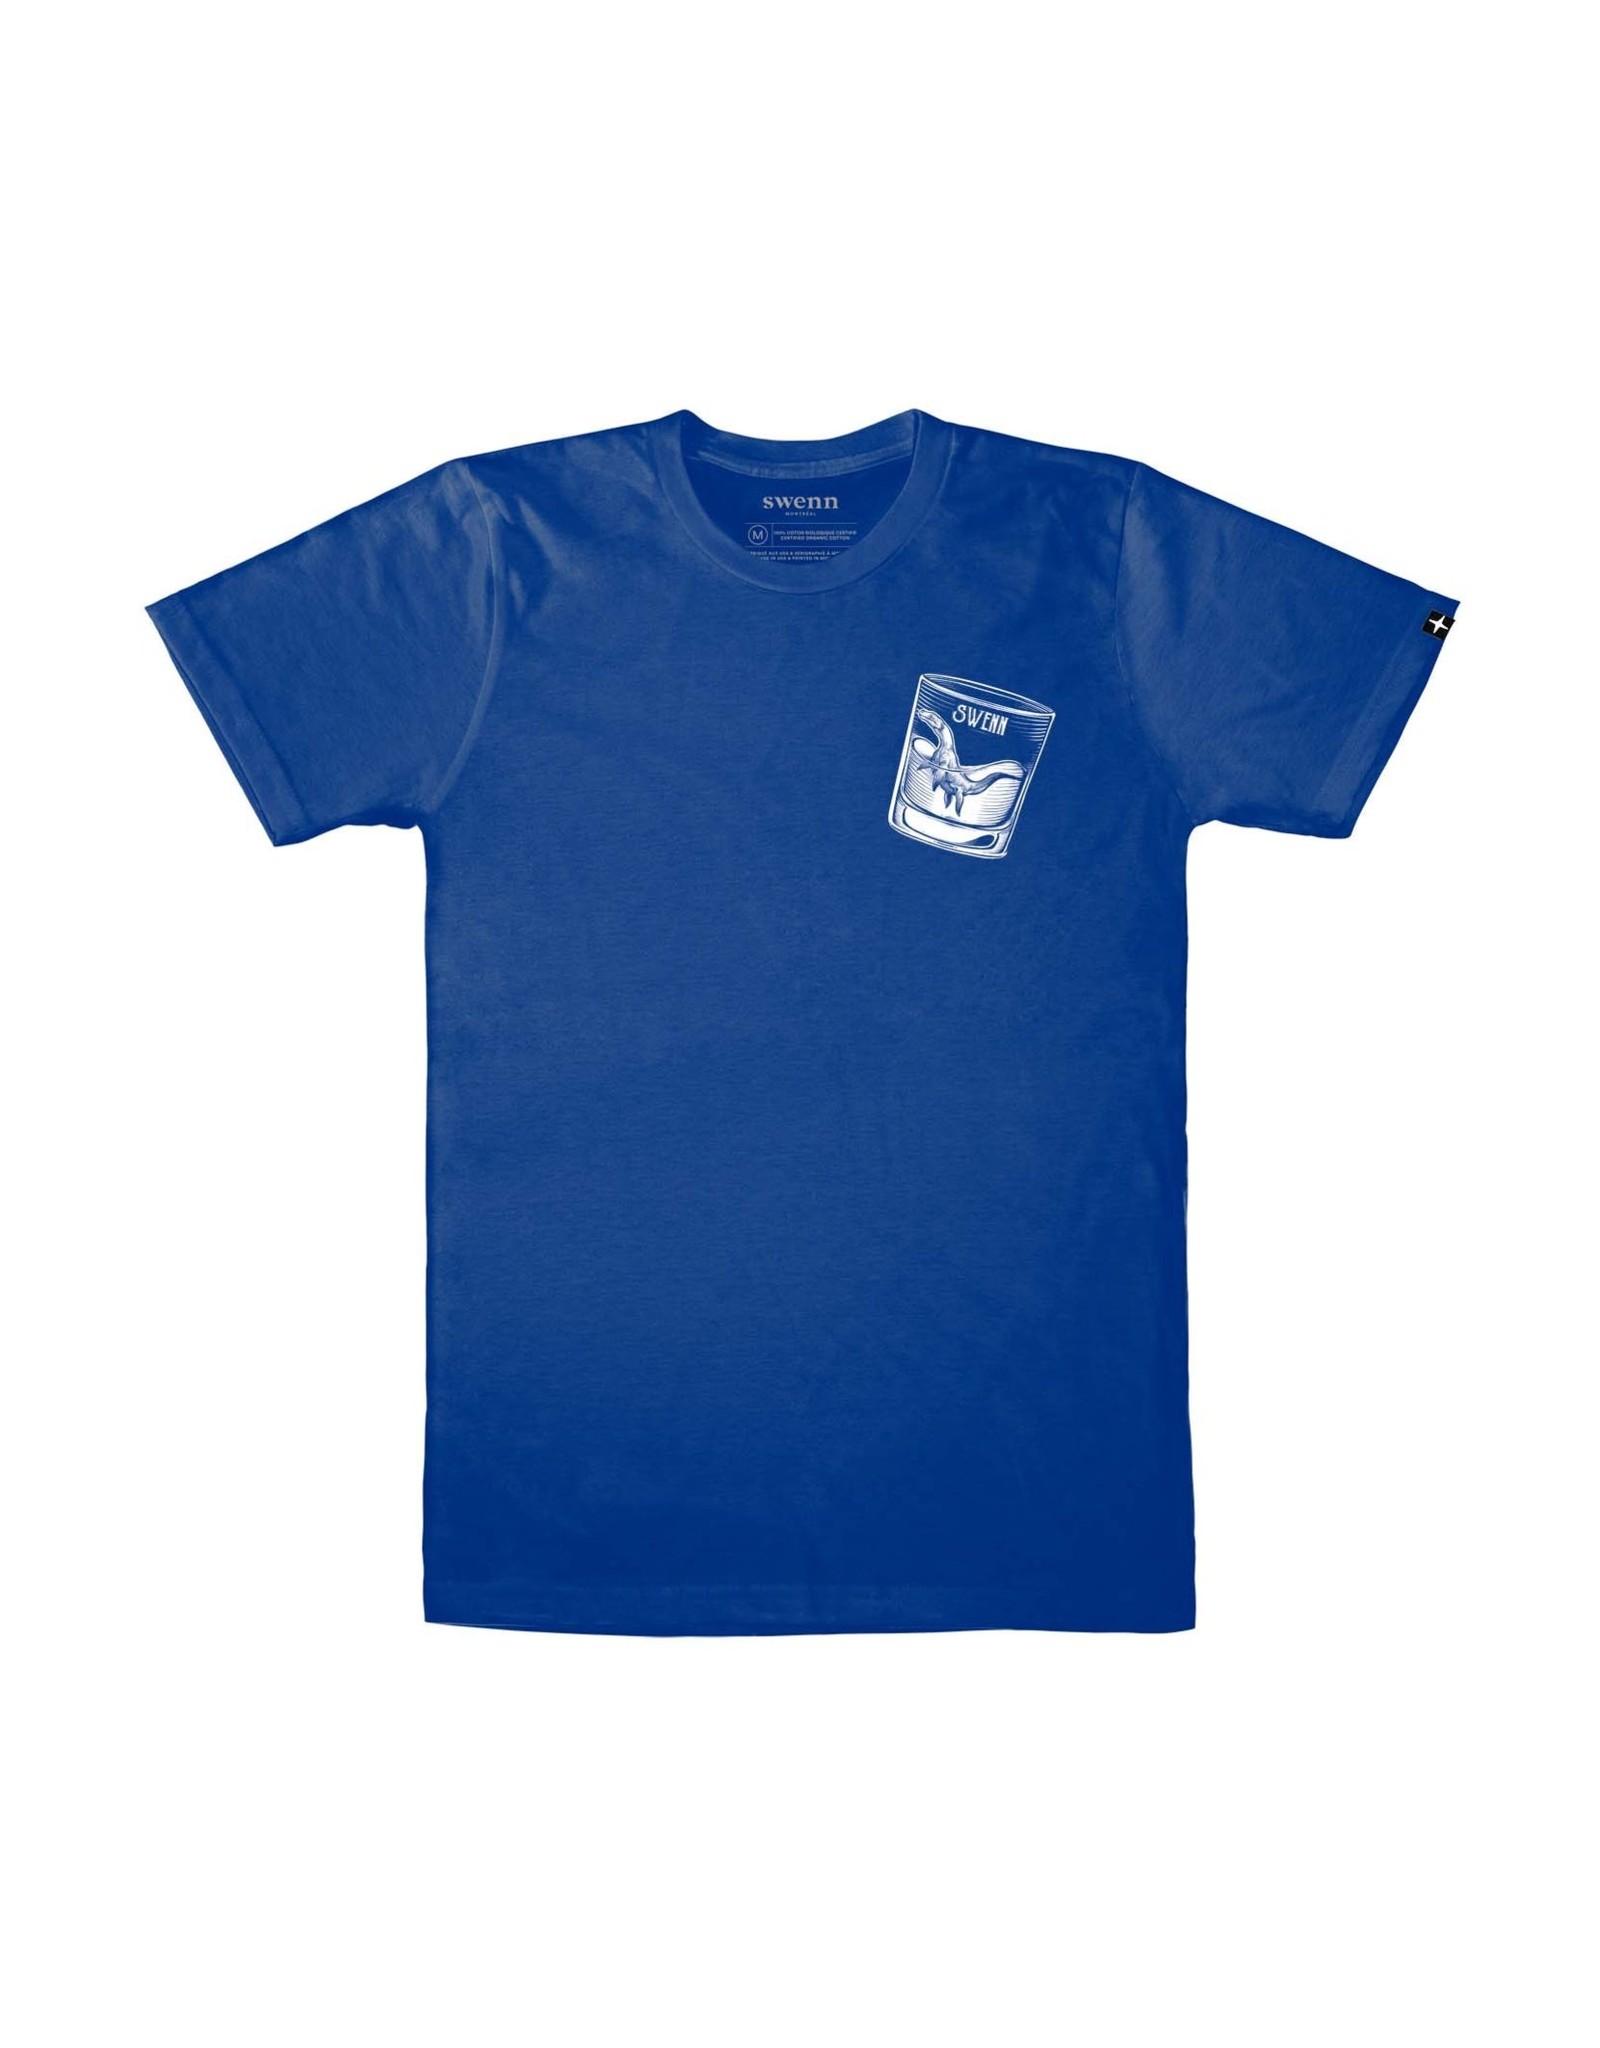 Swenn T-shirt unisexe dinosaure bleu électrique